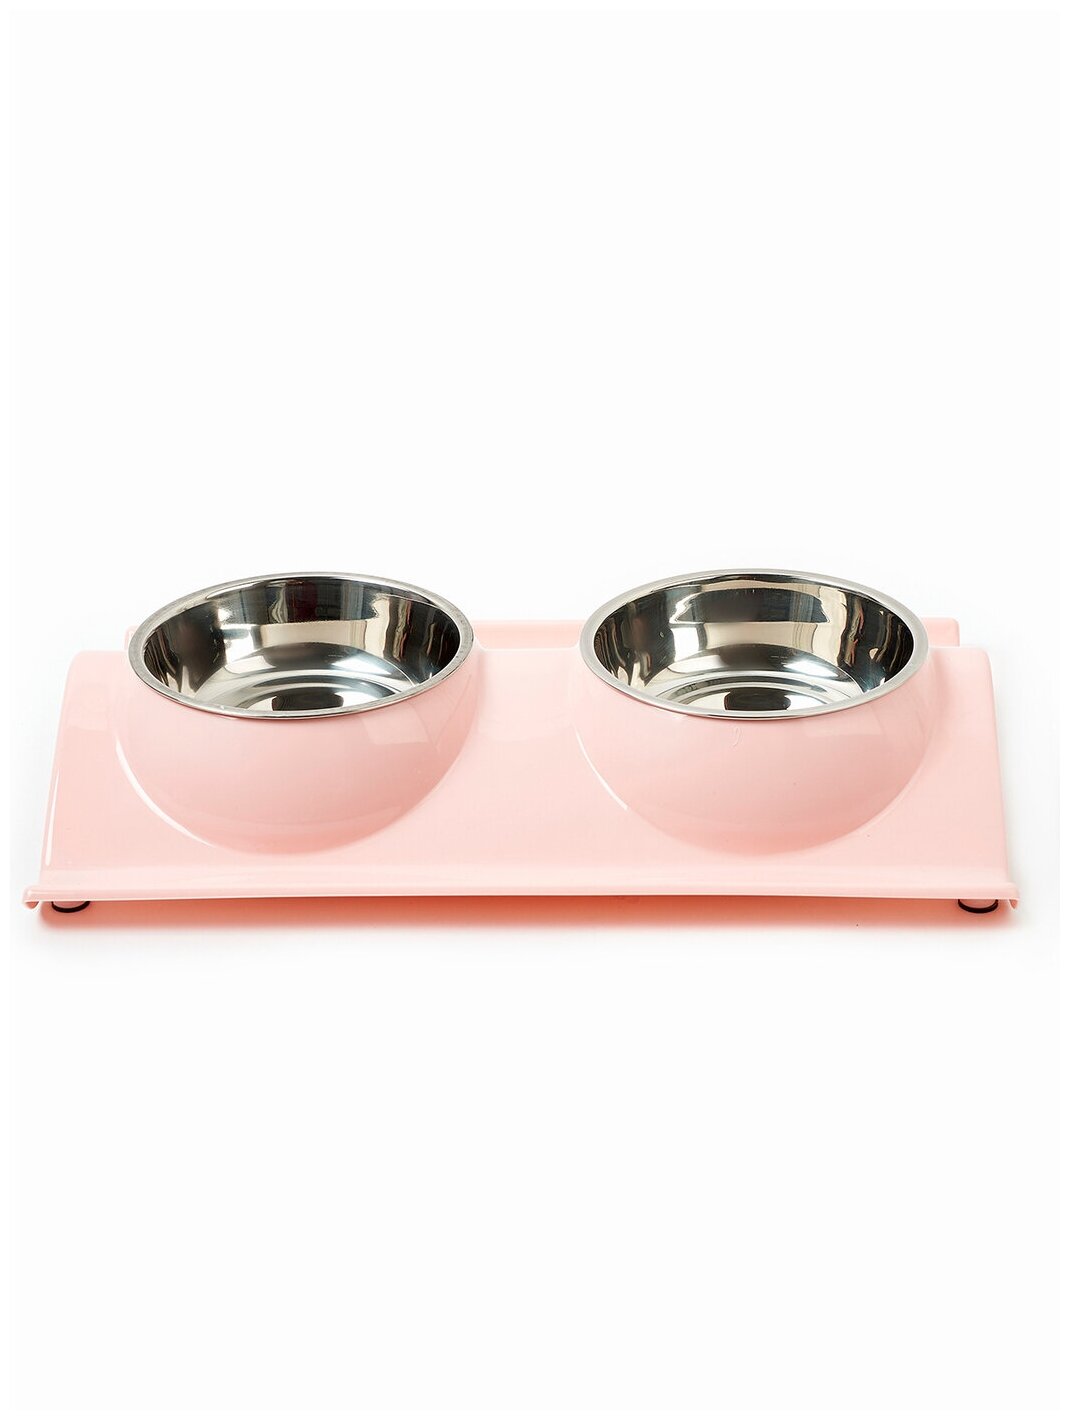 Миска для животных для кошек и собак двойная на подставке, Любимое лакомство 3, цвет: розовый